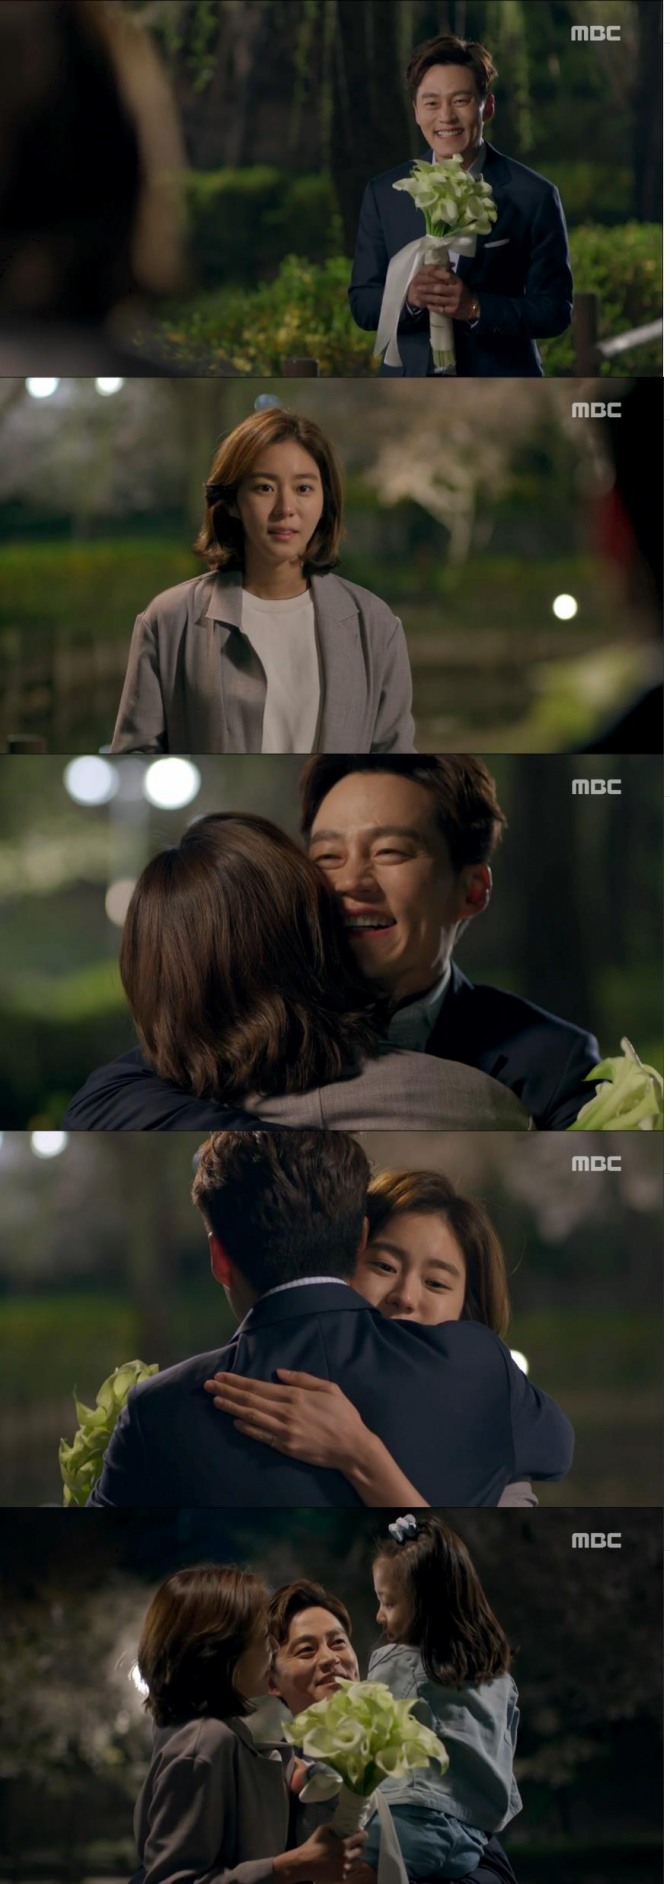 17일 밤 방송된 MBC 주말드라마 '결혼계약'에서 한지훈(이서진)이 자신이 가진 모든 것을 내려 놓고 뇌종양으로 투병하는 혜수(유이) 앞에 꽃다발을 들고 나타났다./사진=MBC 방송 캡처